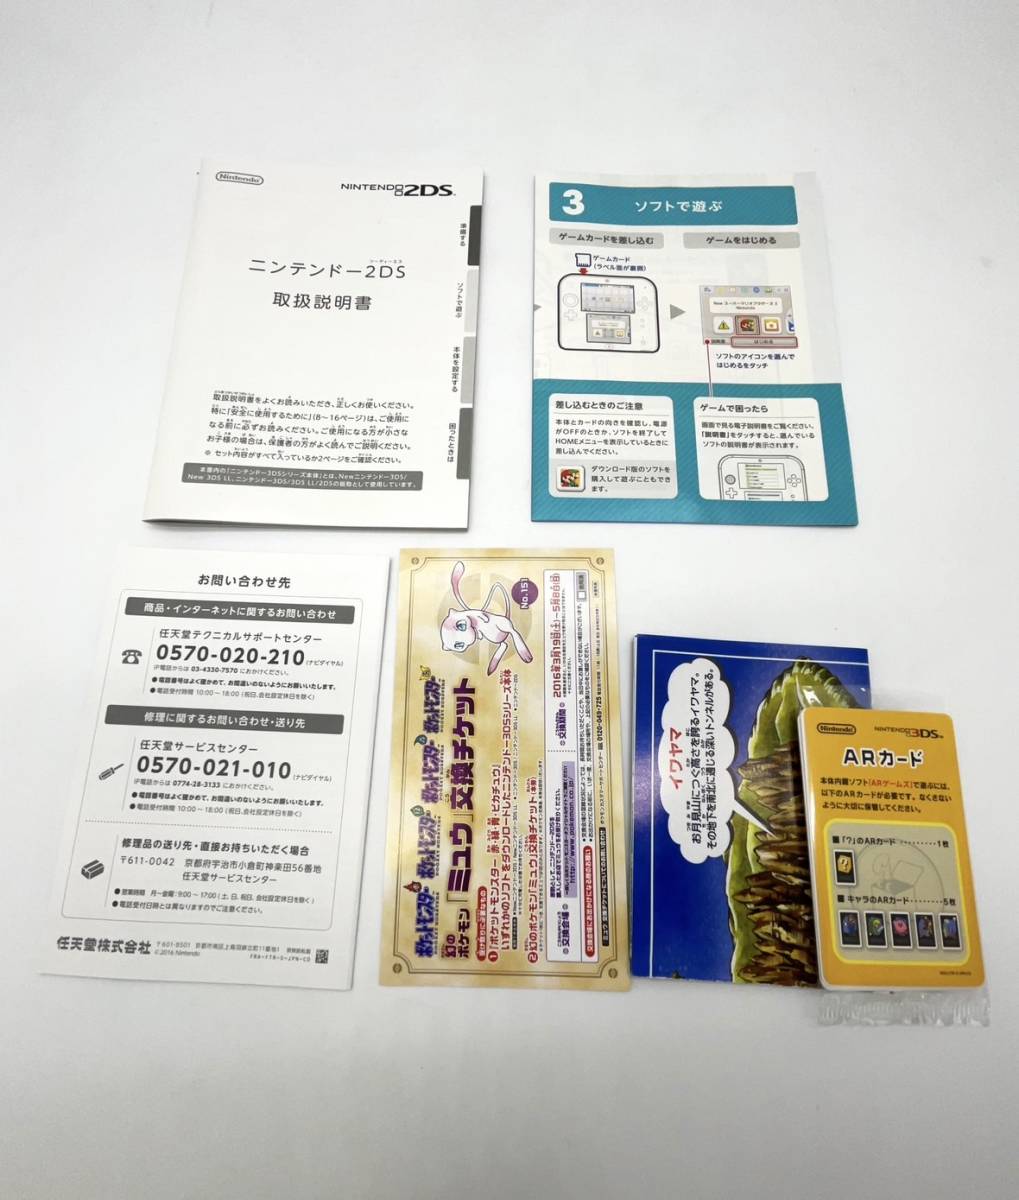 ニンテンドー2DS 『ポケットモンスター ピカチュウ』限定パック【極美